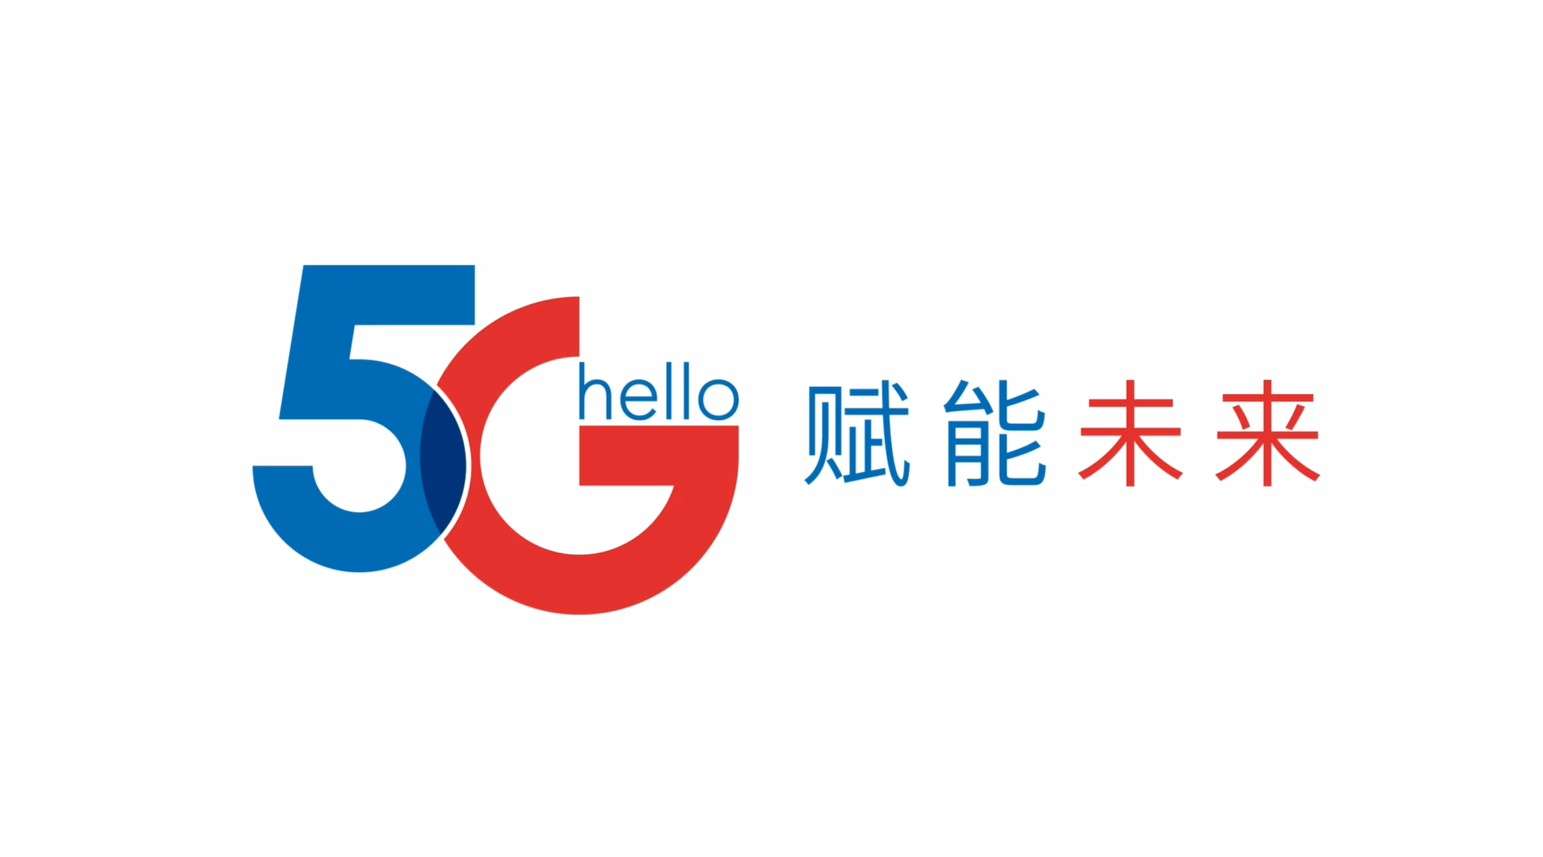 中国电信 - Hello  5G  赋能未来